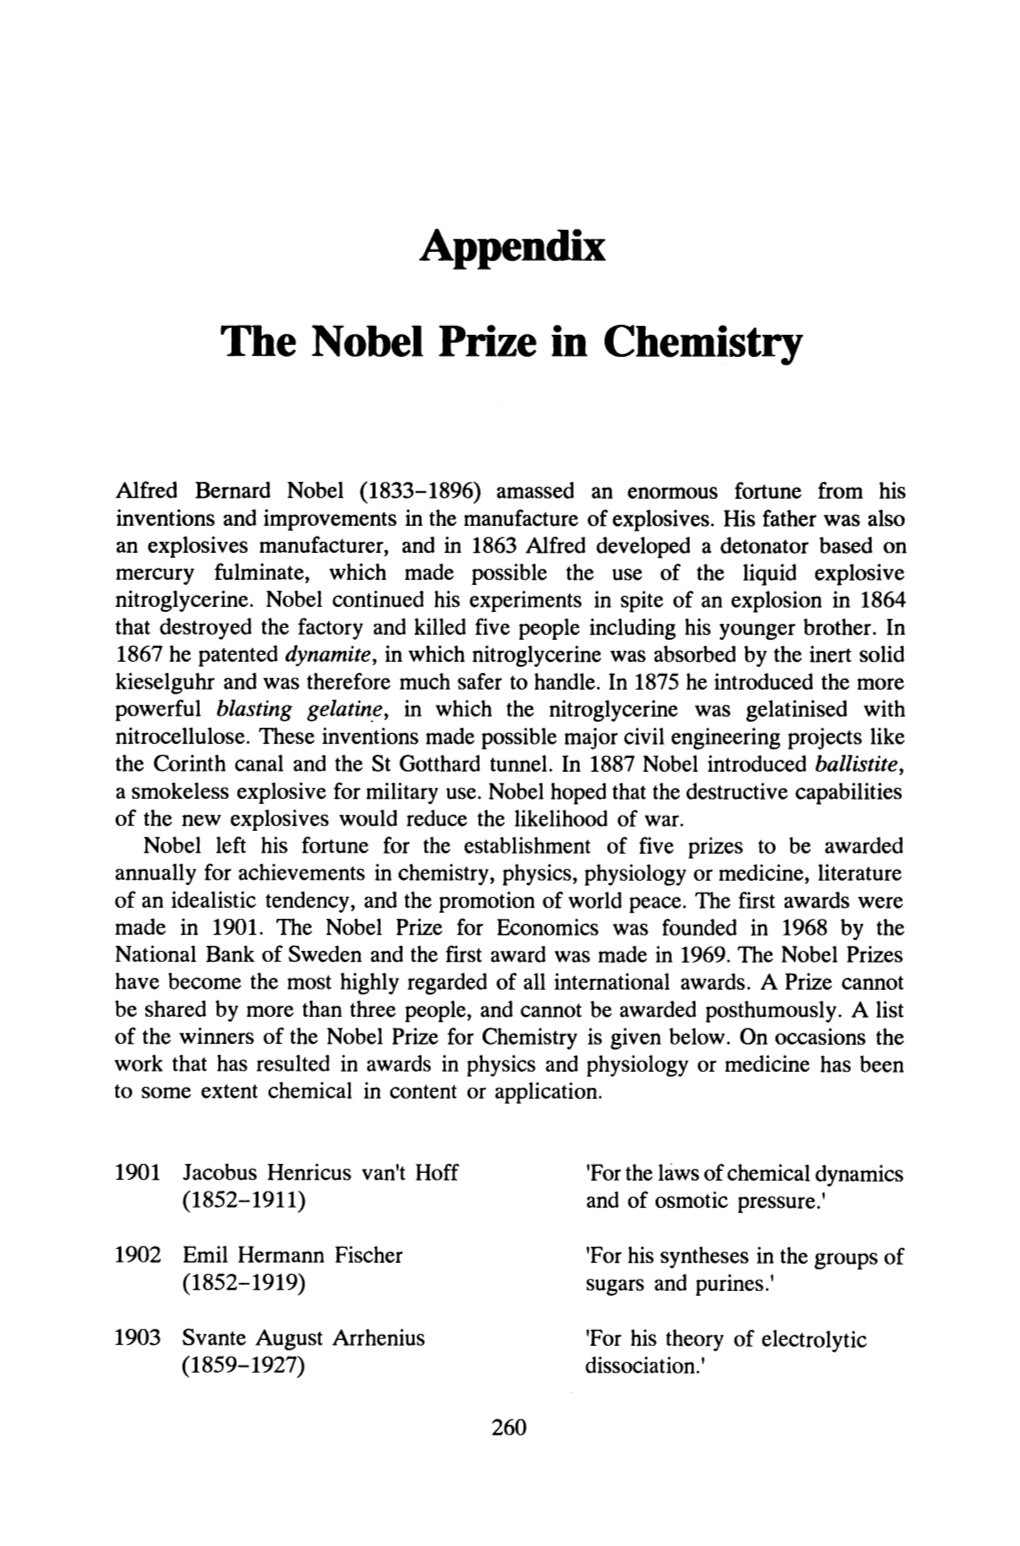 Appendix the Nobel Prize in Chemistry